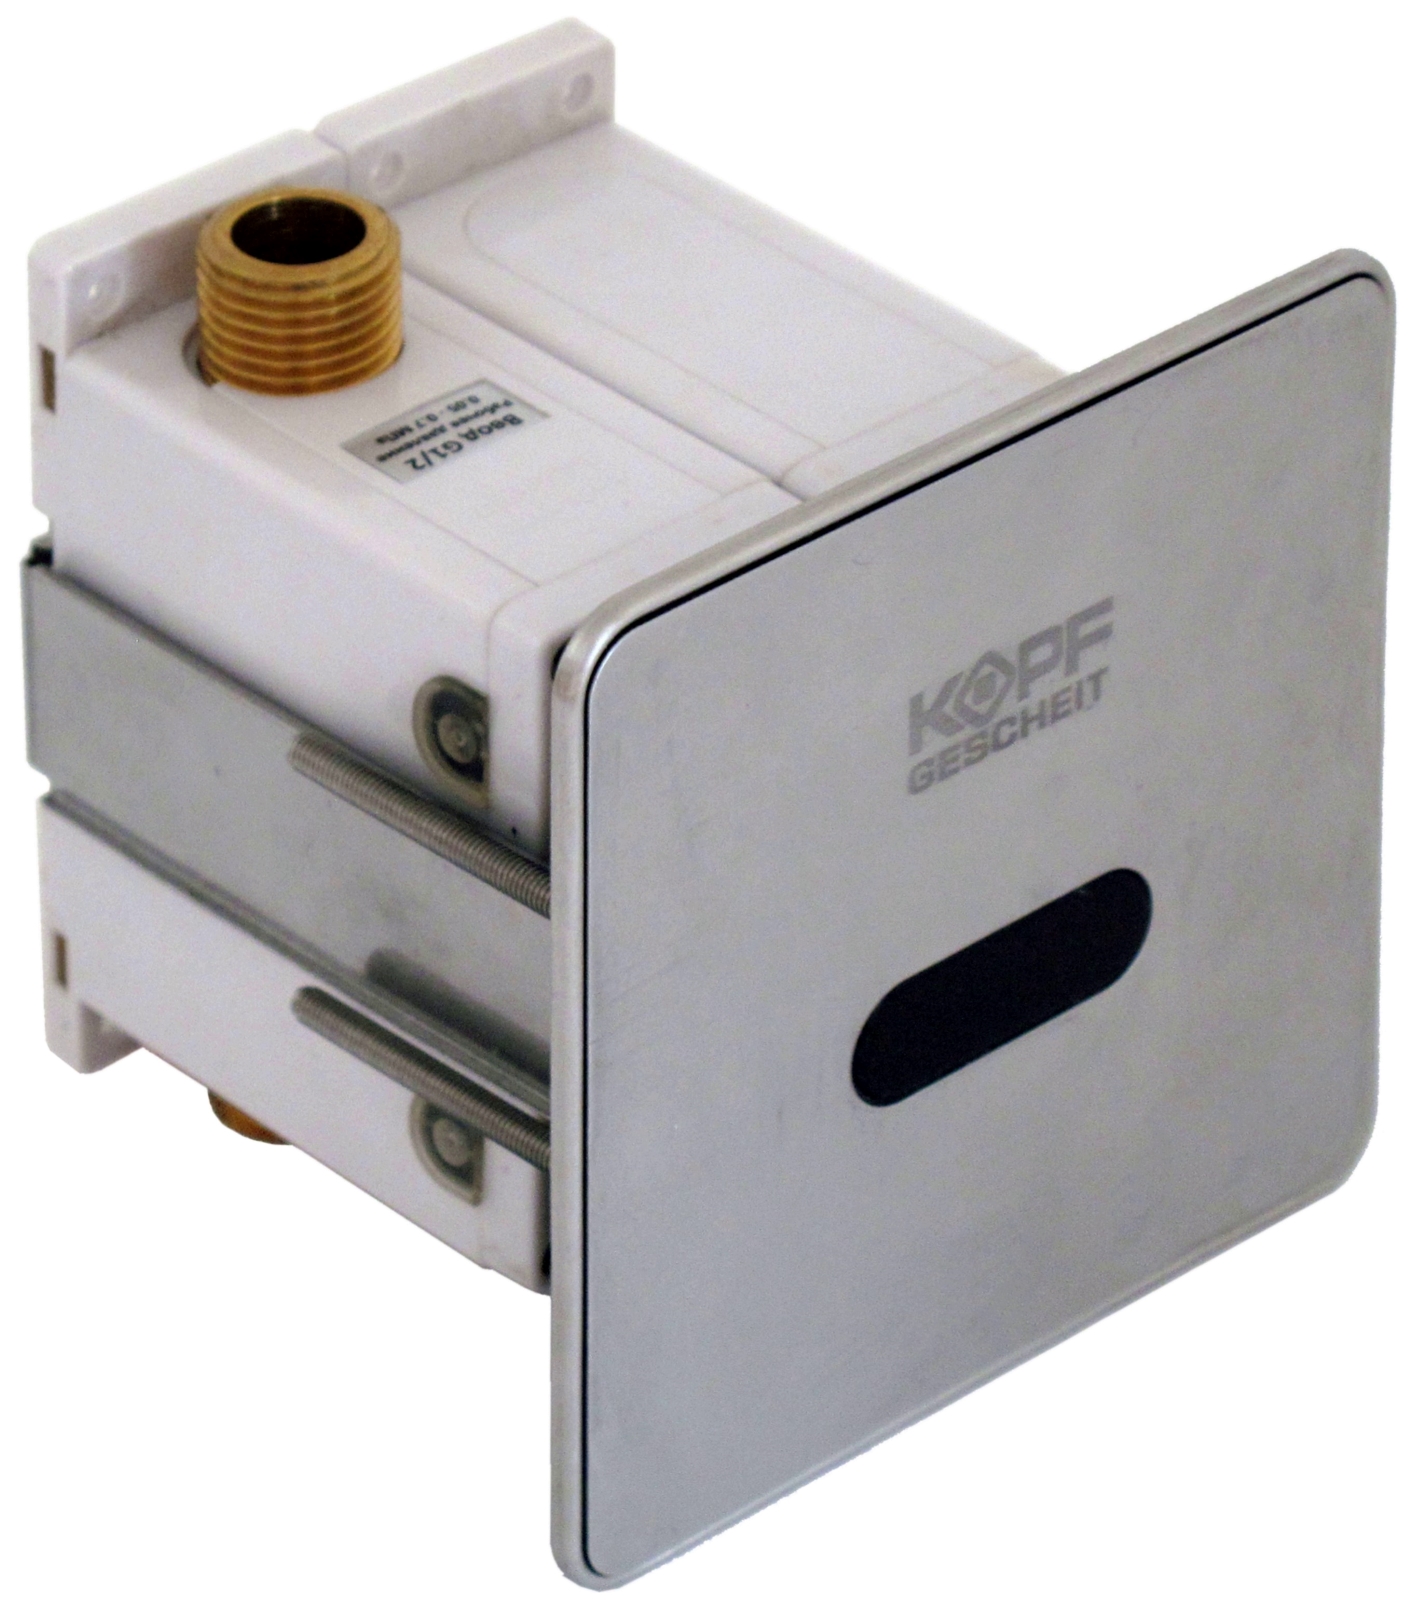 Automatic urinal flush unit KG6433DC